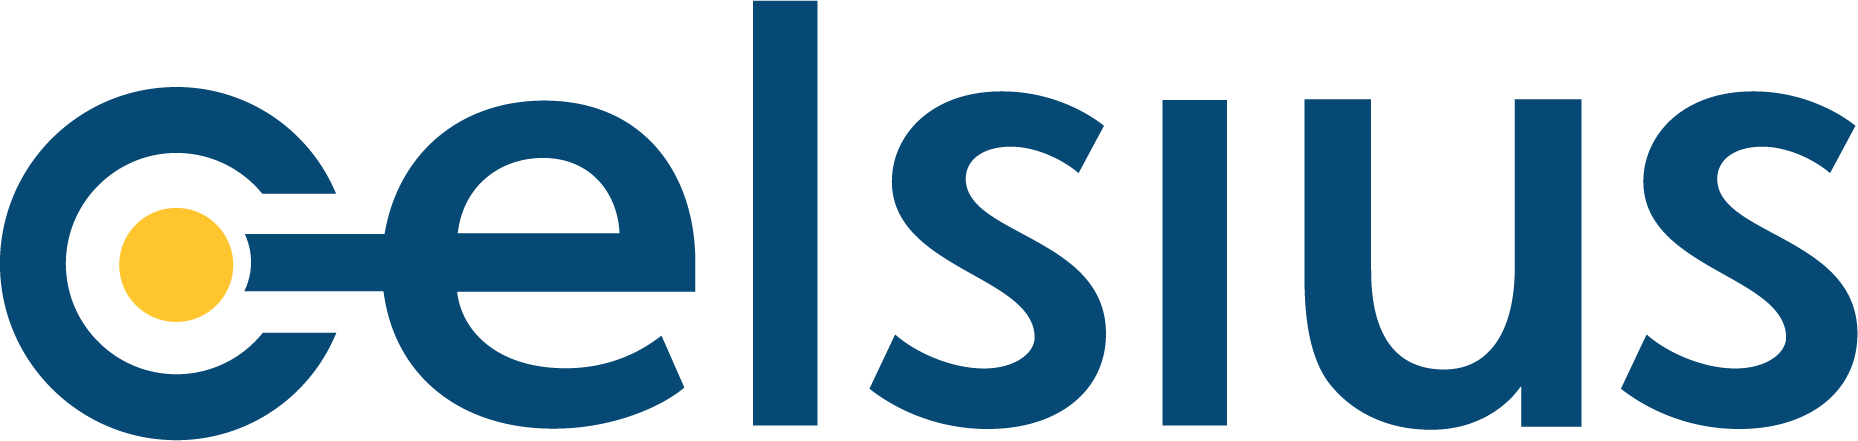 Celsius Therapeutics logo